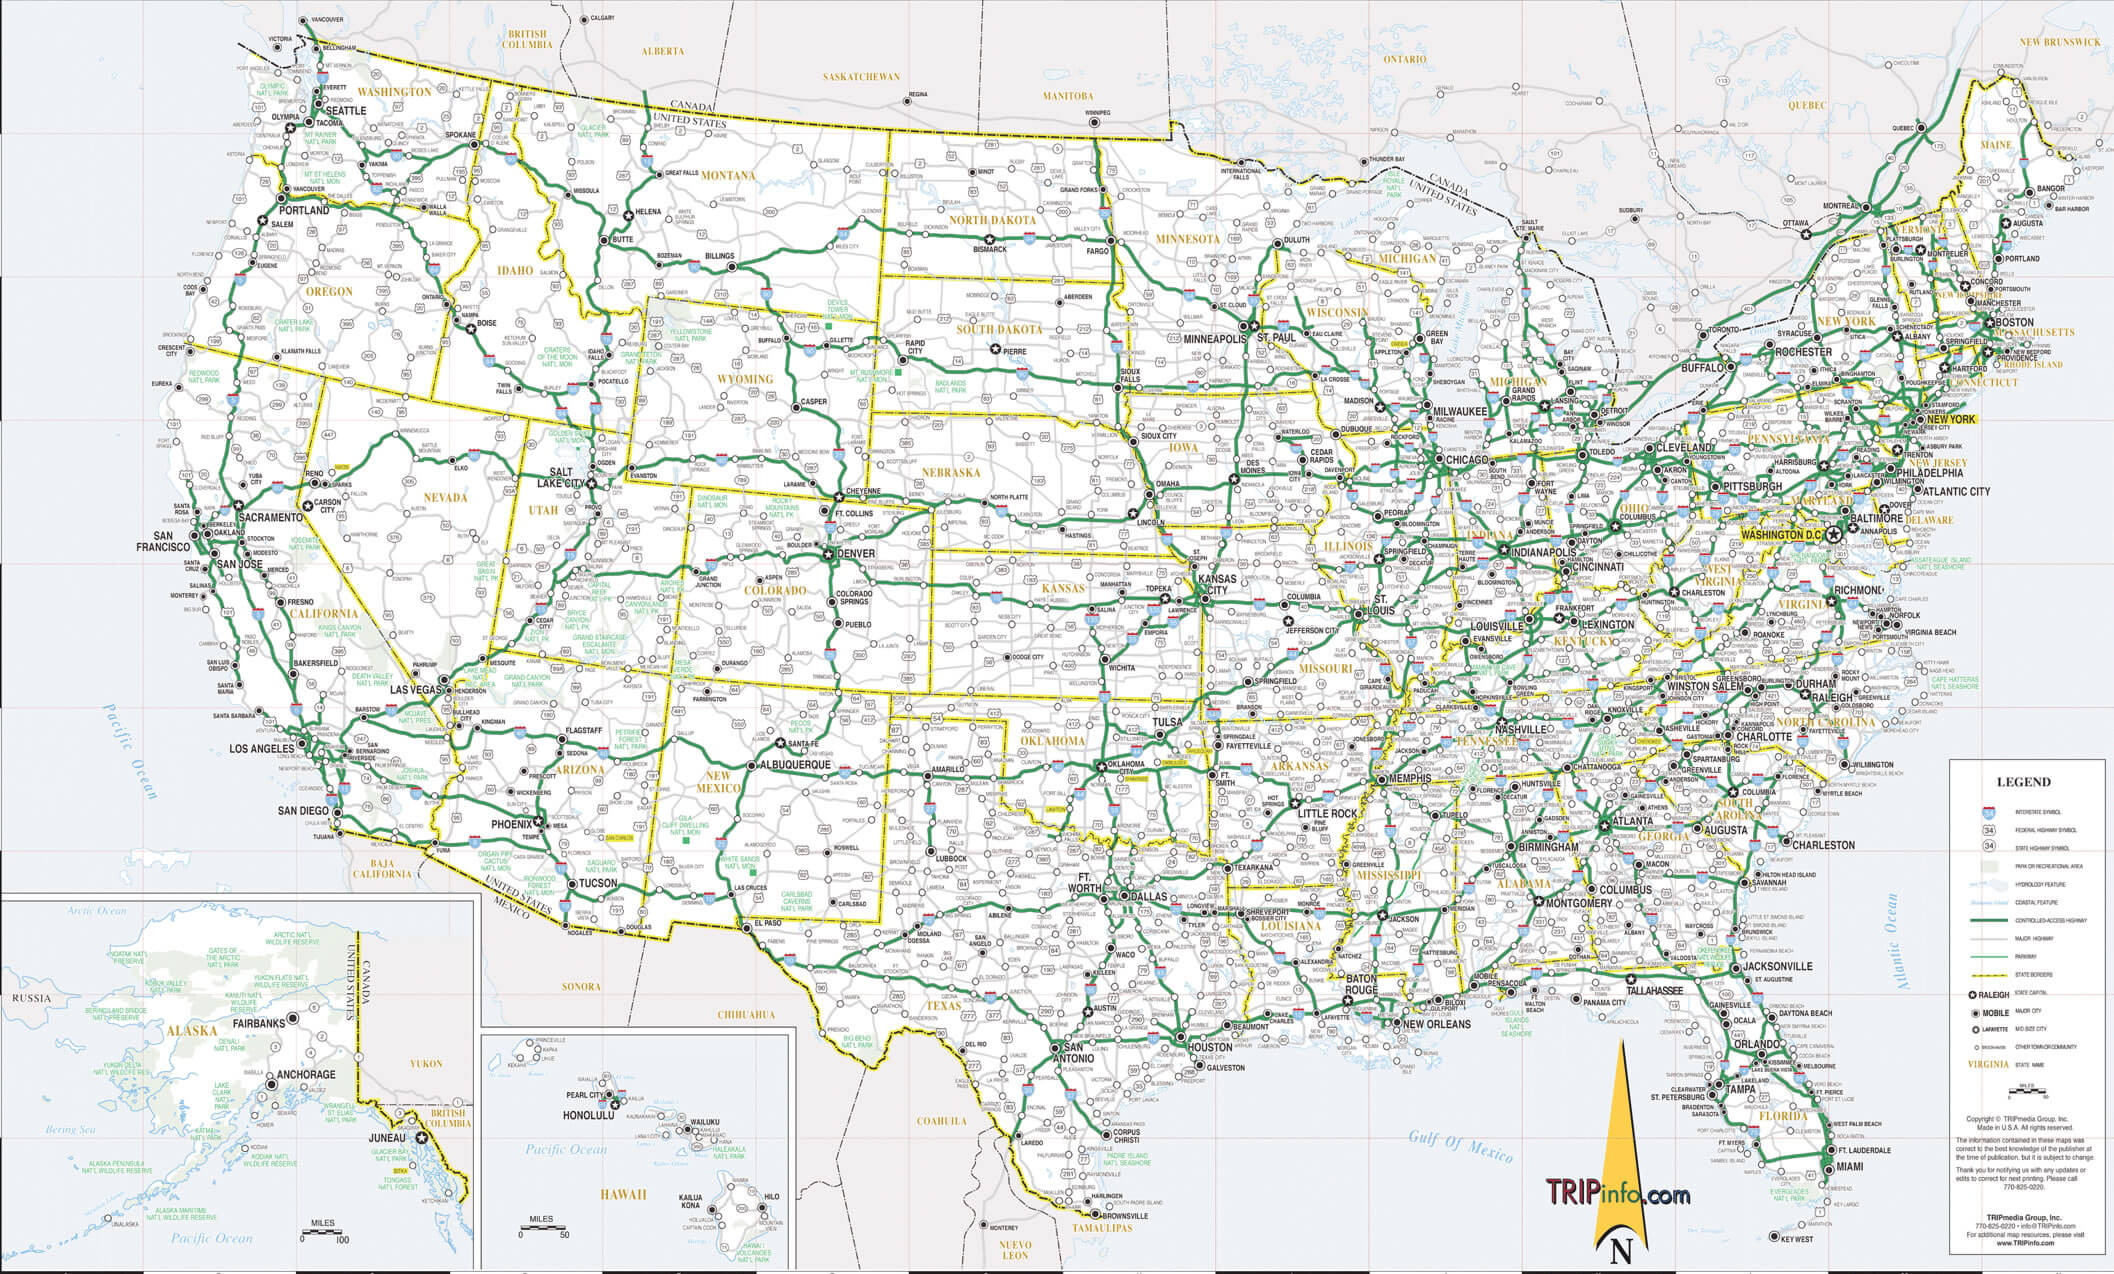 land karte der Vereinigte Staaten von amerika